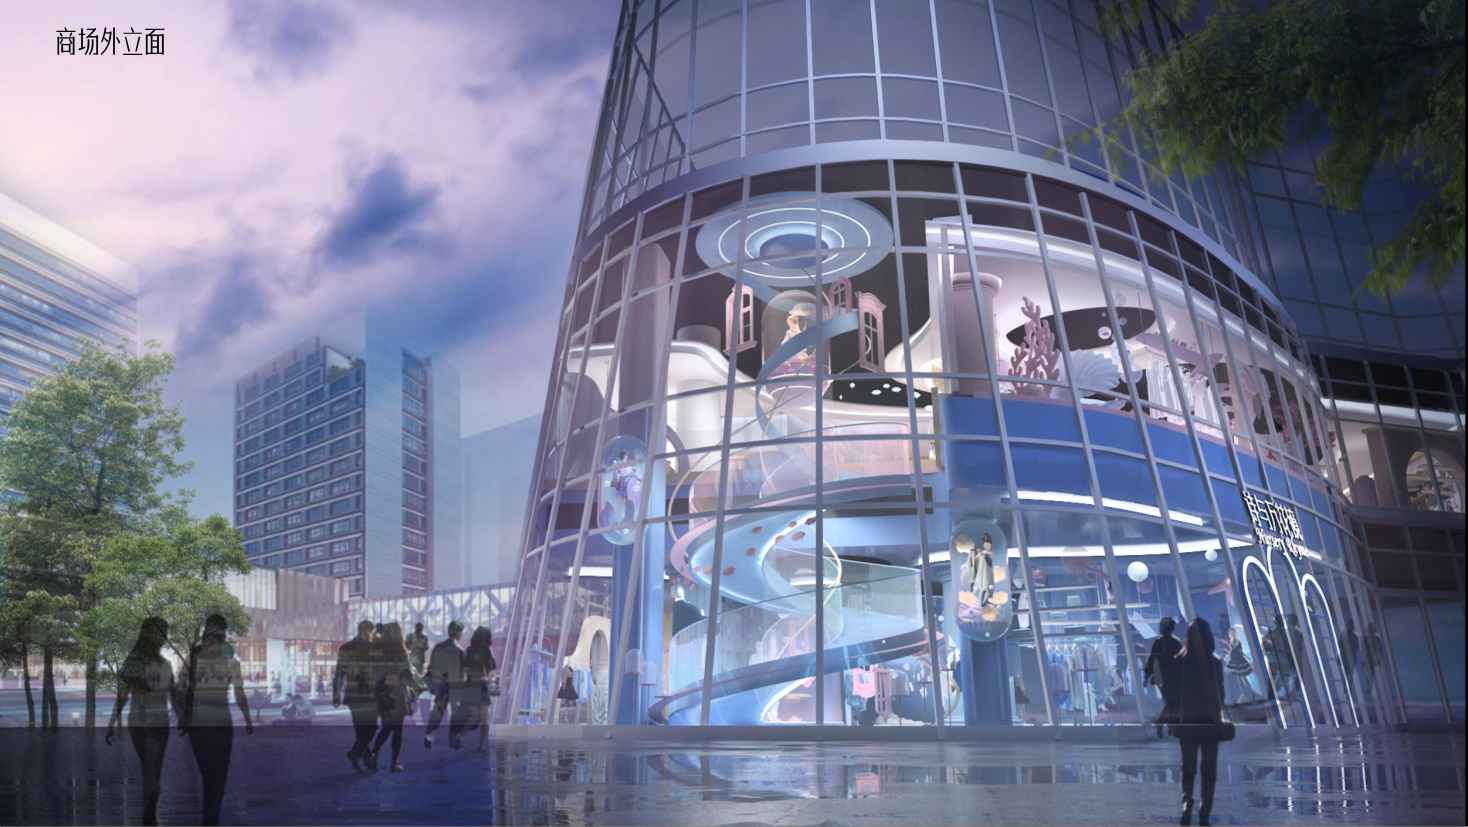 36氪首发 |“三坑”大型集合店品牌「诗与万花镜」获小米、险峰近千万美元天使轮投资，致力于为Z世代用户打造城市迪士尼空间